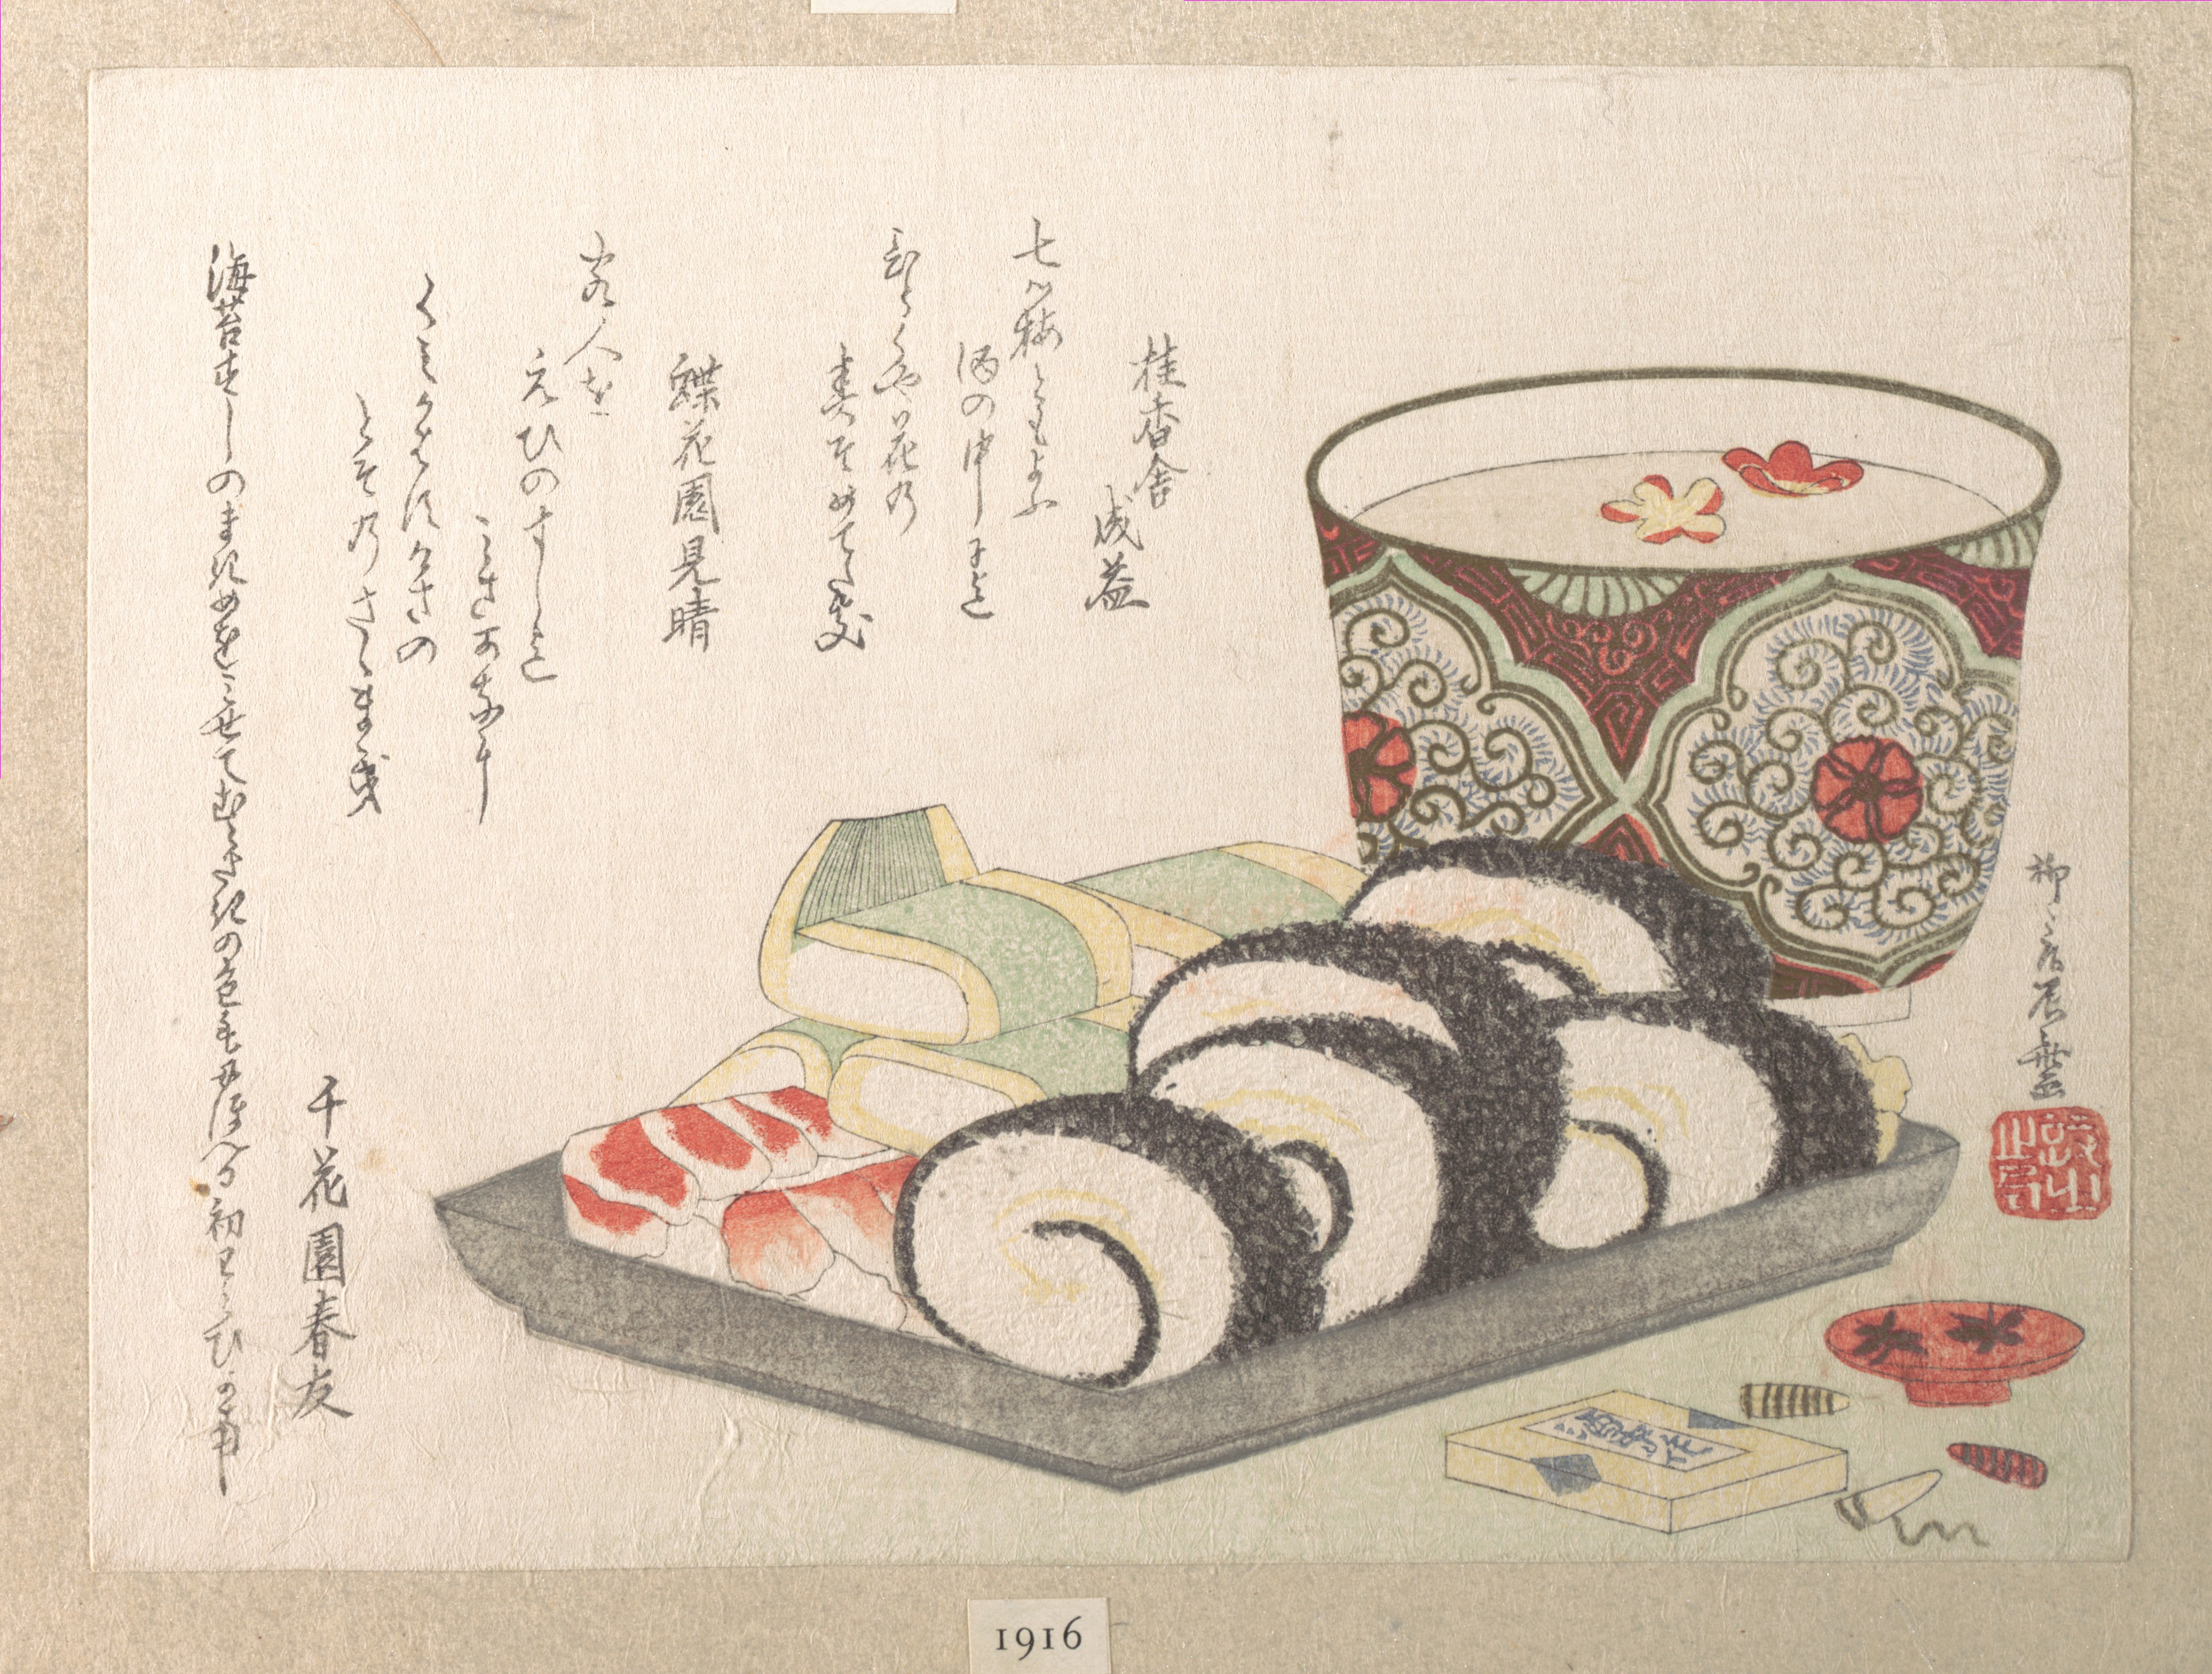 寿司とお屠蘇 by Ryūryūkyo Shinsai - 1810年代 - 13.3 x 18.4 cm 